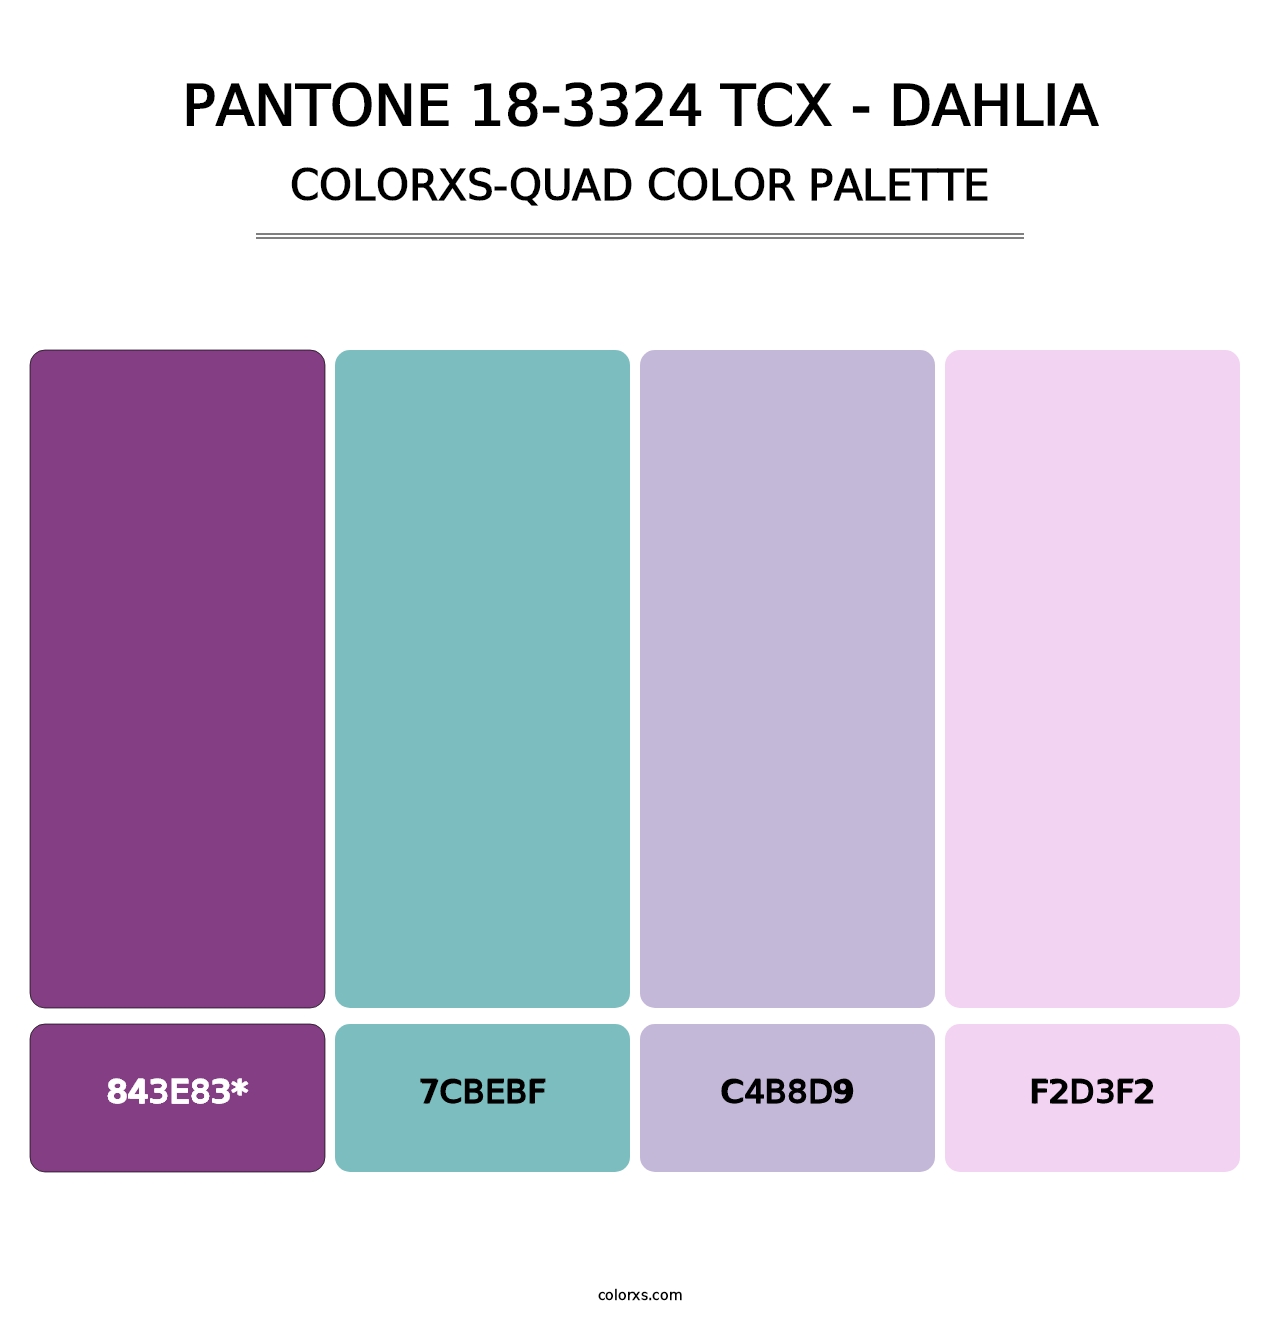 PANTONE 18-3324 TCX - Dahlia - Colorxs Quad Palette